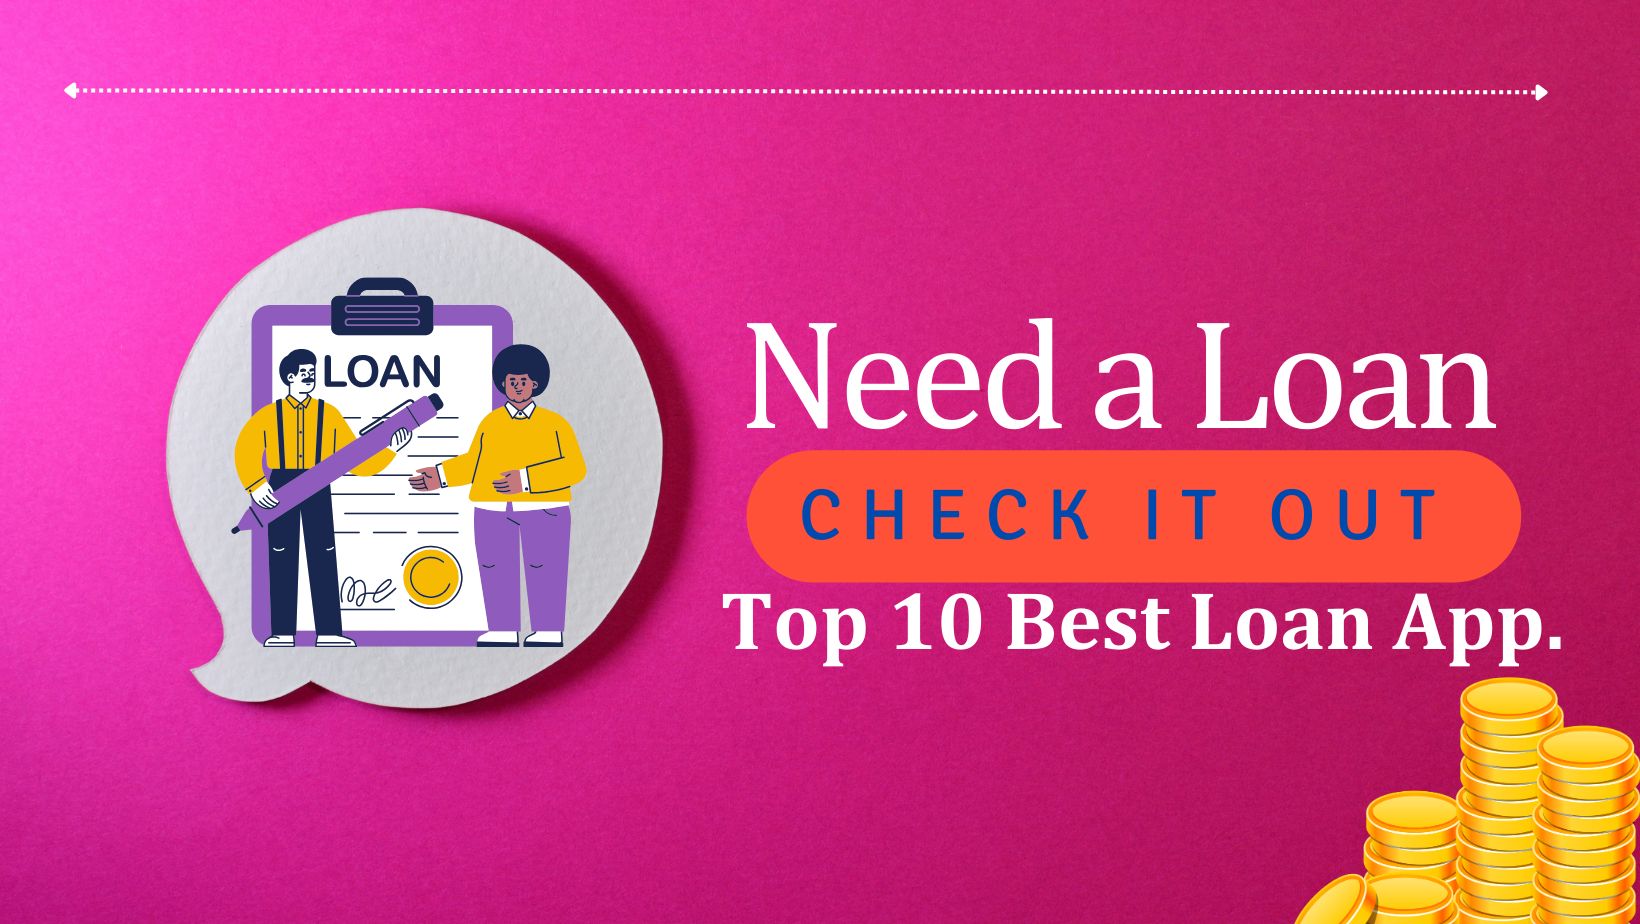 Loan App - Top 10 Best Loan App